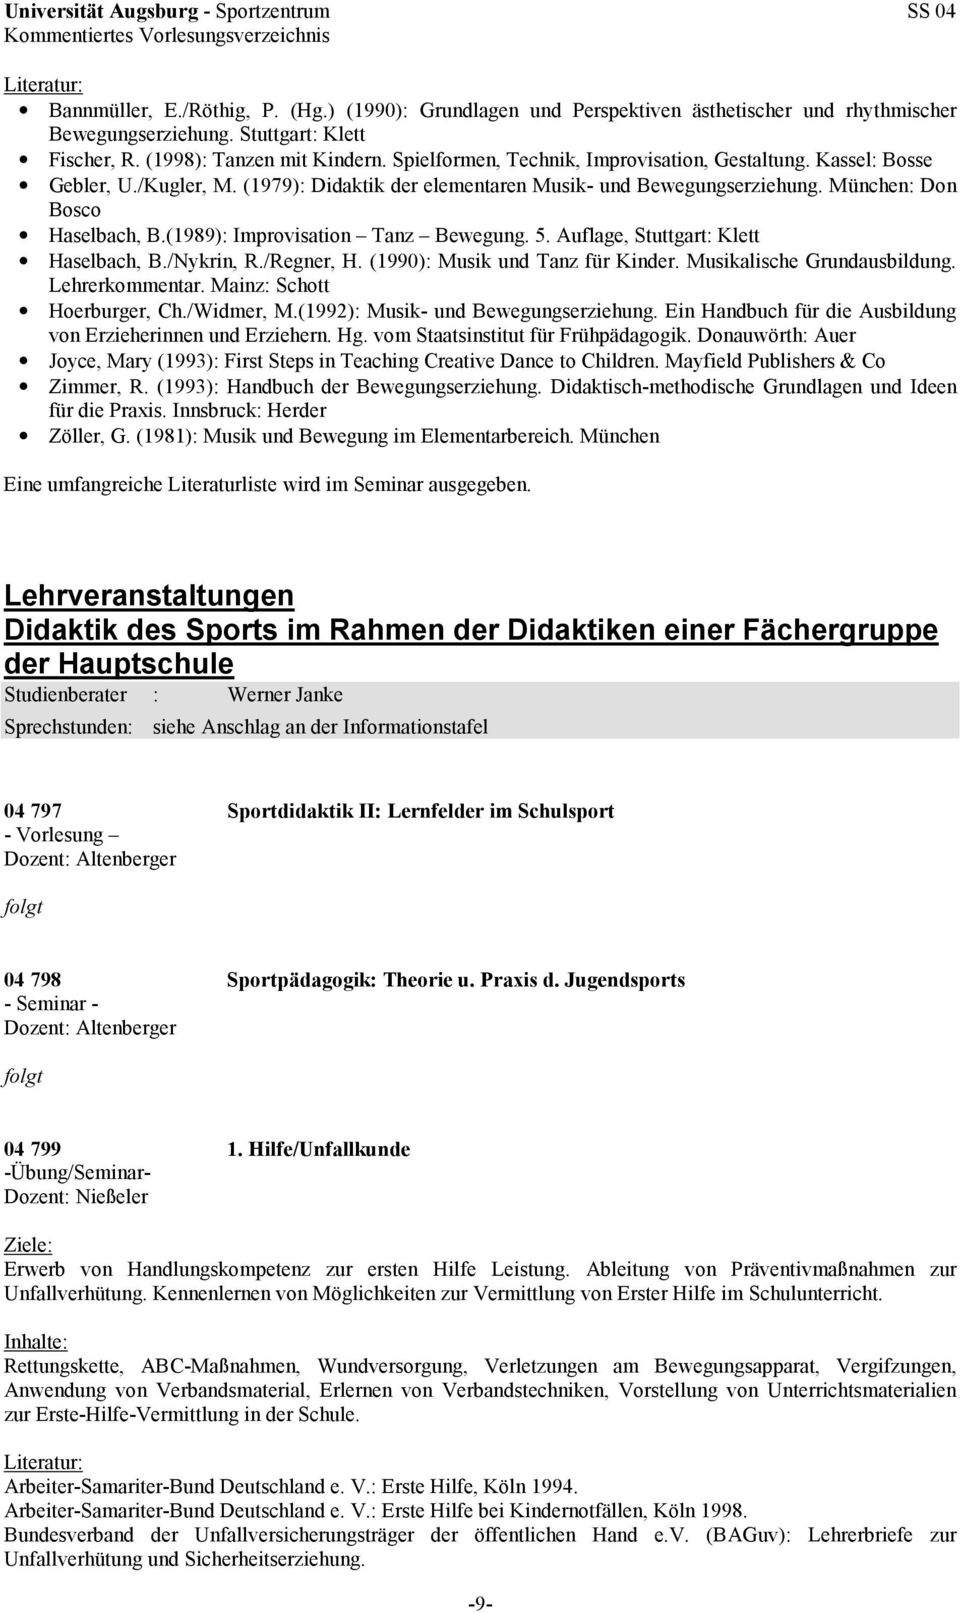 (1989): Improvisation Tanz Bewegung. 5. Auflage, Stuttgart: Klett Haselbach, B./Nykrin, R./Regner, H. (1990): Musik und Tanz für Kinder. Musikalische Grundausbildung. Lehrerkommentar.